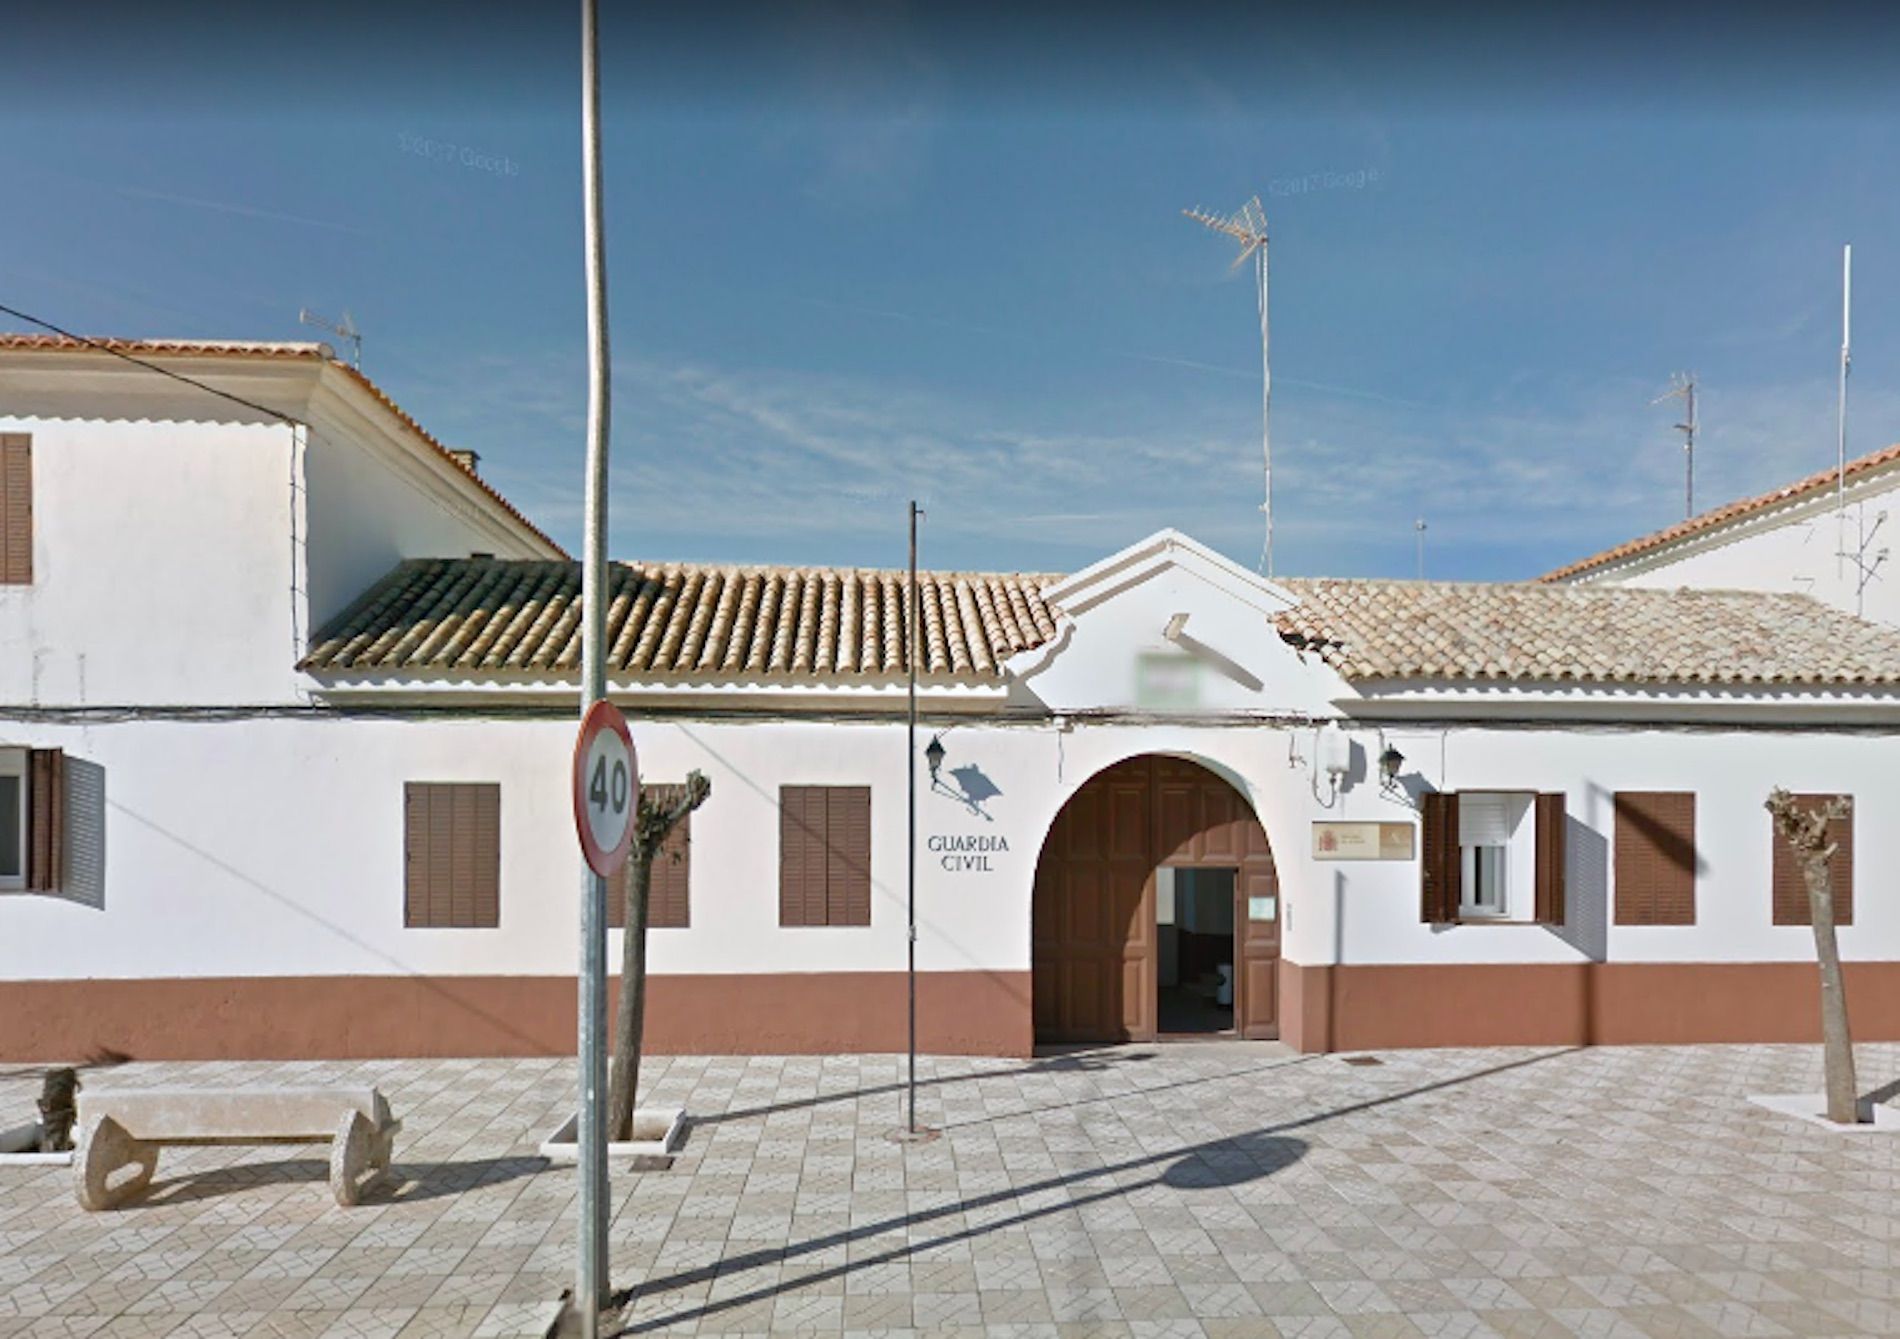 Instalaciones Guardia Civil Villafranca de los Caballeros / Google Maps